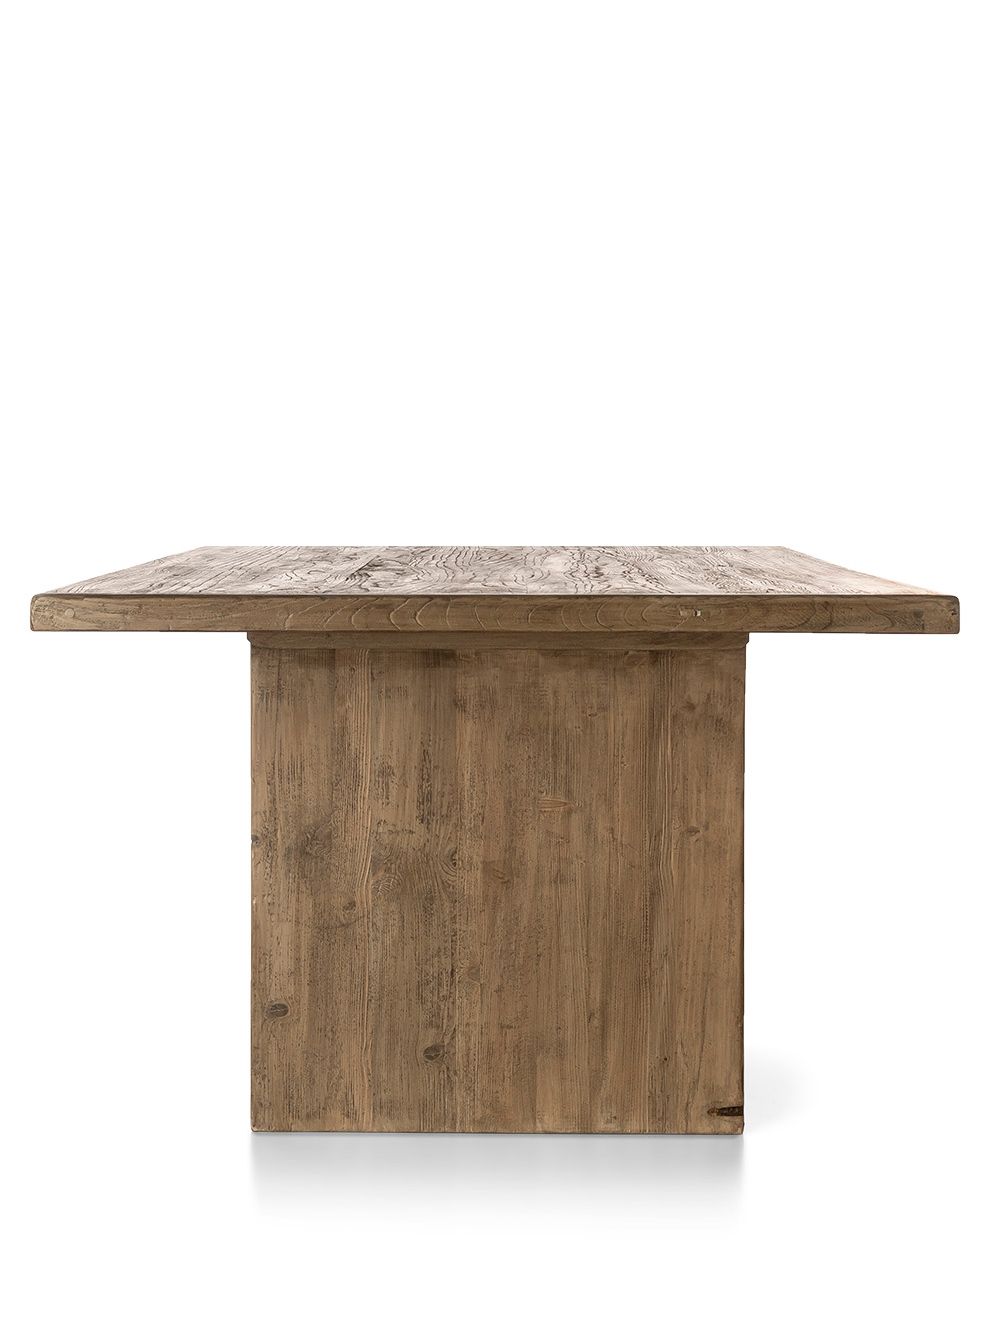 Mesa-de-comedor-de-madera-rustica-GRIFFIN-COLOR-ROBLE-210X110-Landmark-03